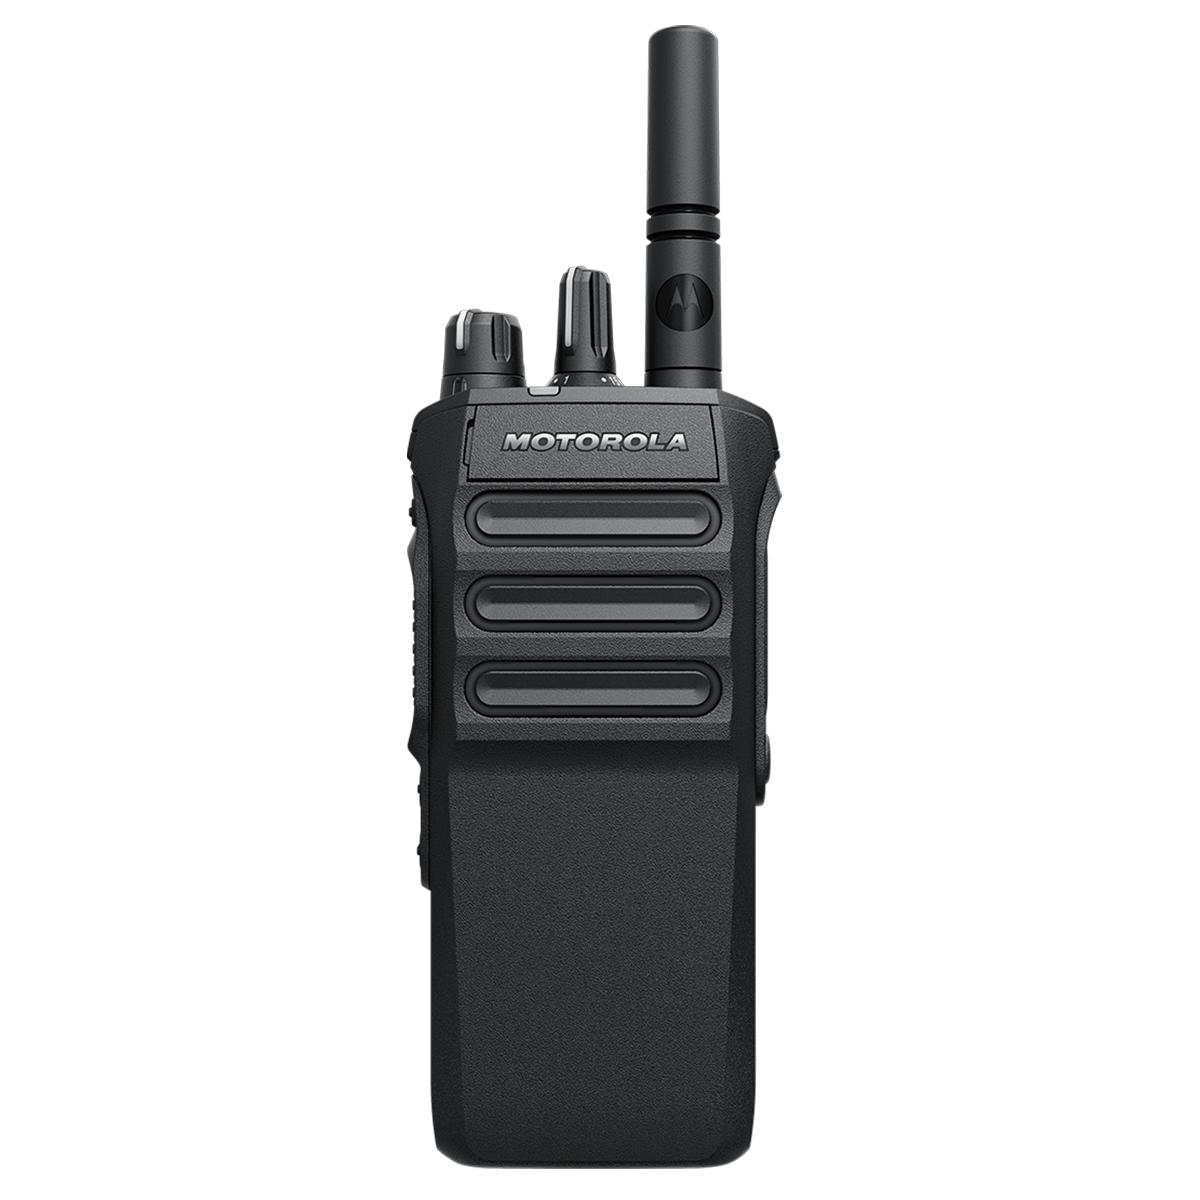 Radio Motorola R7 1000 Ch 5W VHF 136-174MHZ TIA Enable NKP